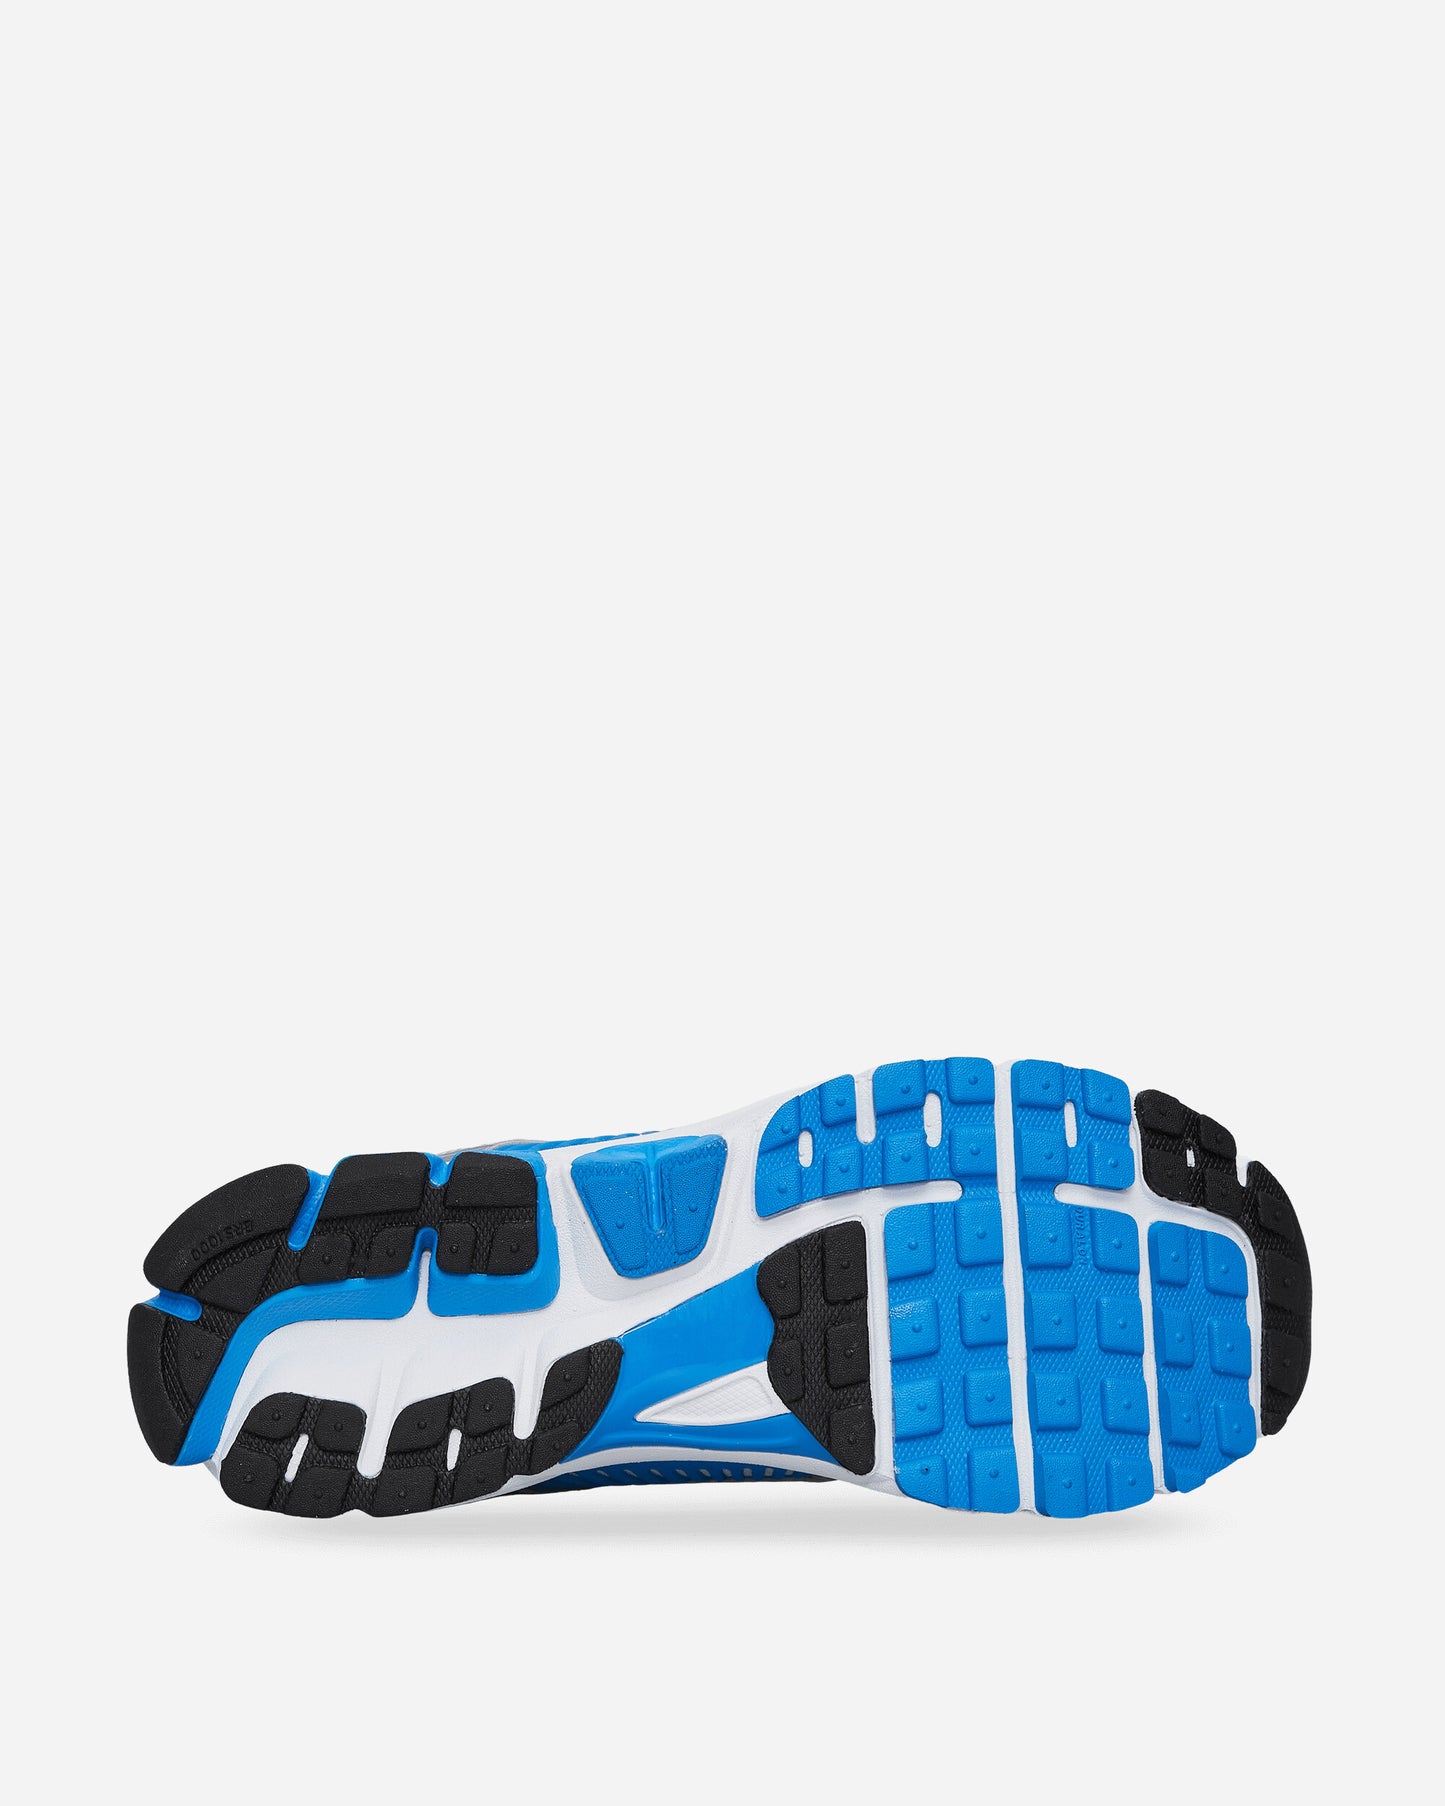 Nike Nike Zoom Vomero 5 Ms White/Black Sneakers Low FJ4151-100